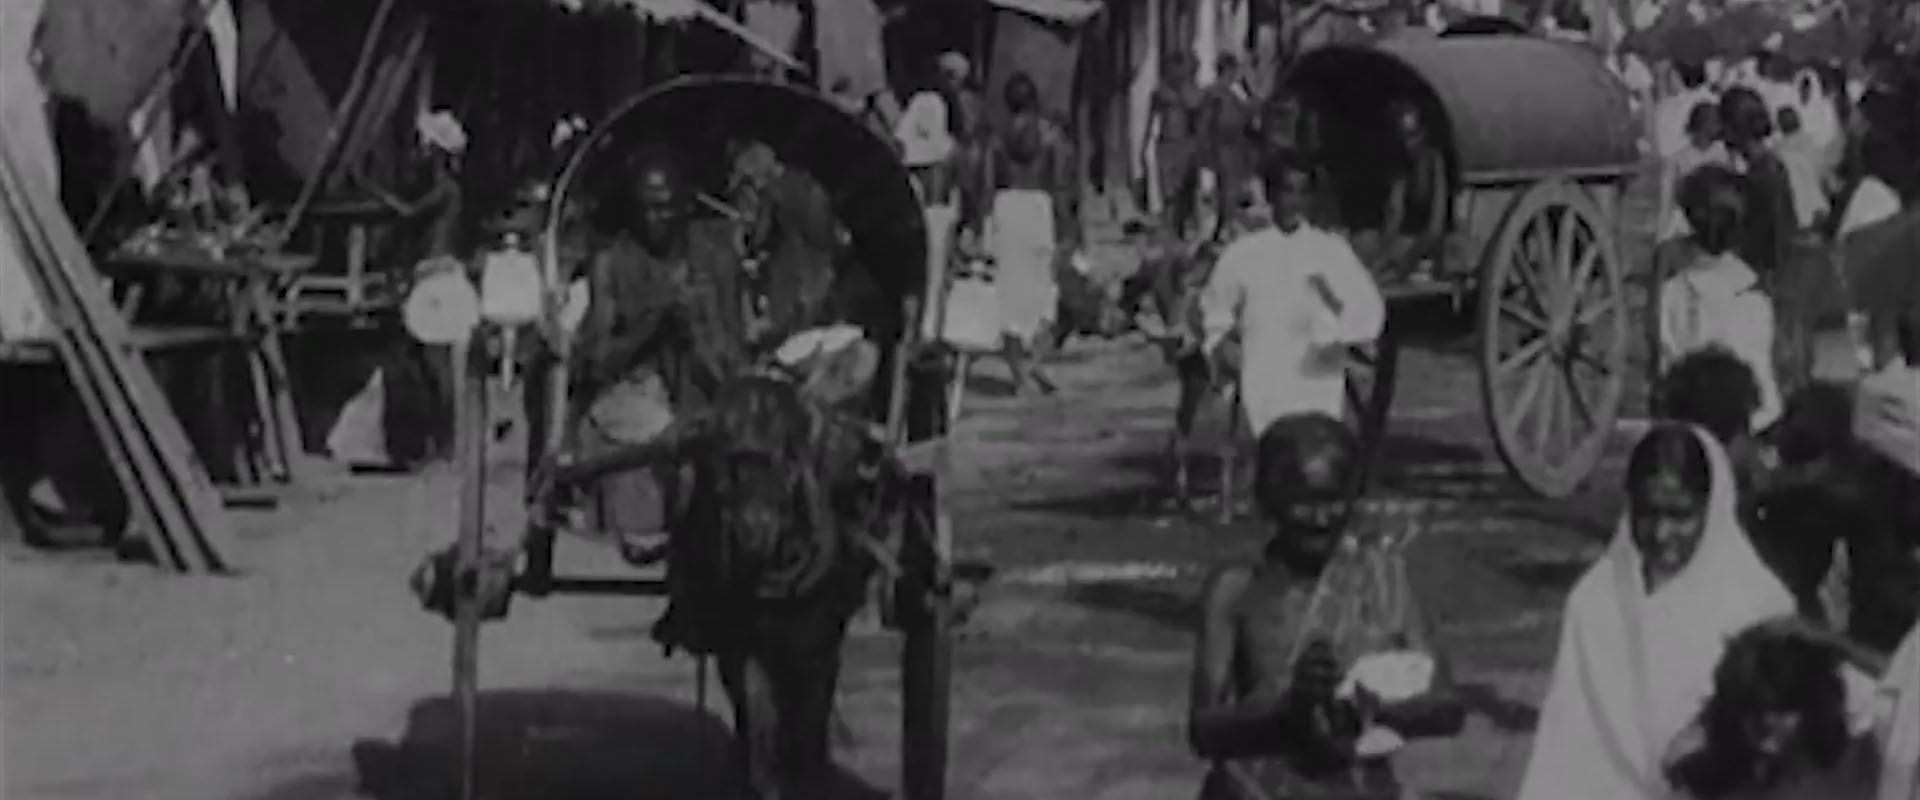 Bannière de l'Inde sur pellicule : 1899-1947